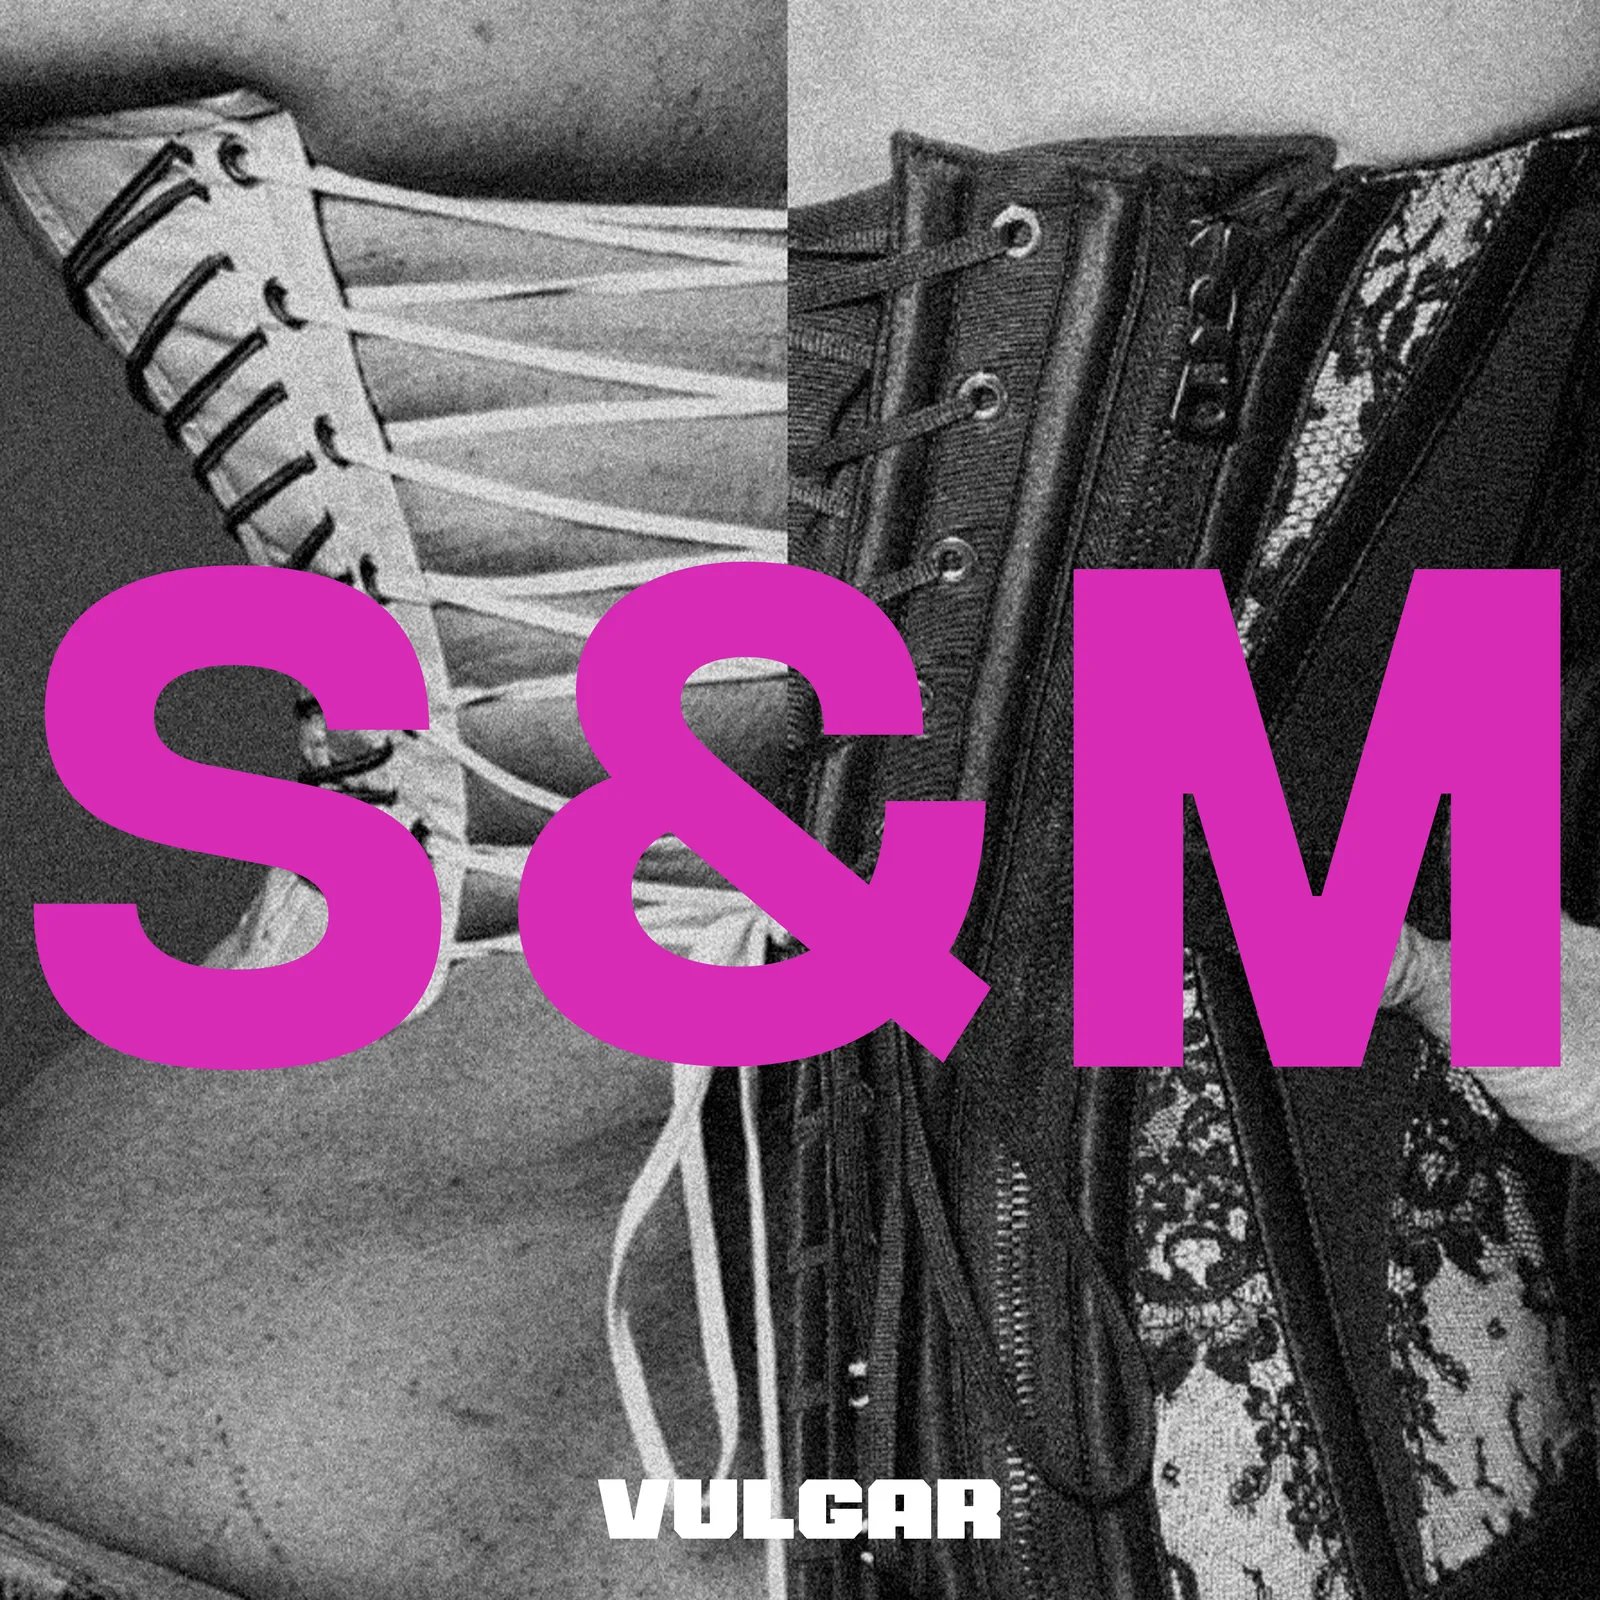 Мадонна и Сэм Смит поделились новым треком «Vulgar» (фото 1)